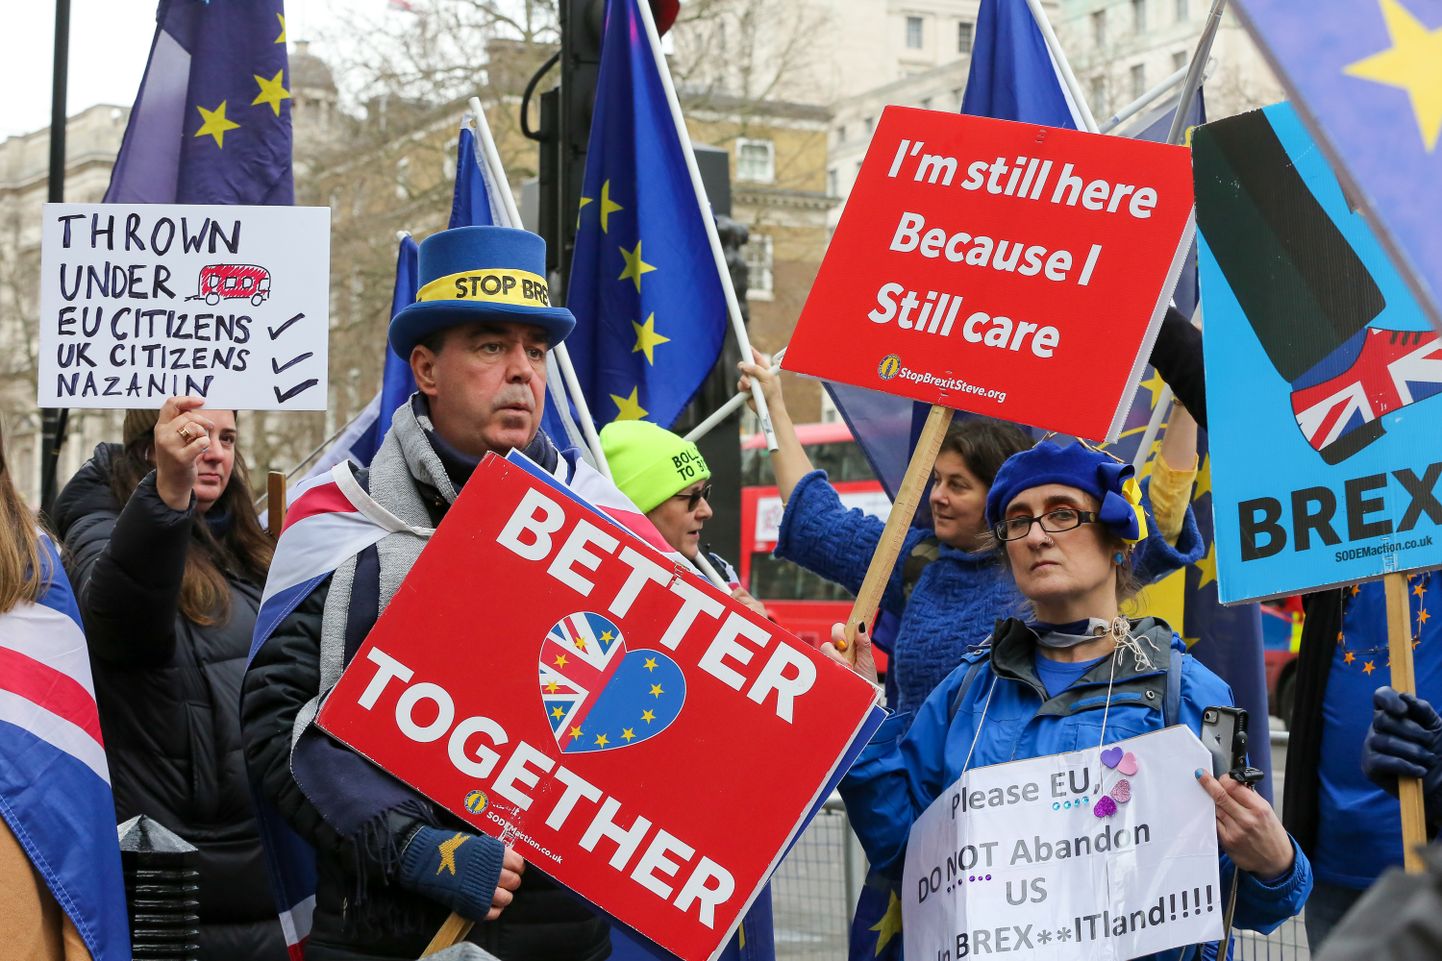 Kõigi eelduste kohaselt lahkub Suurbritannia juba jaanuari lõpus Euroopa Liidust, ent Londonis võib siiski näha Brexiti vastu protestivaid inimesi.